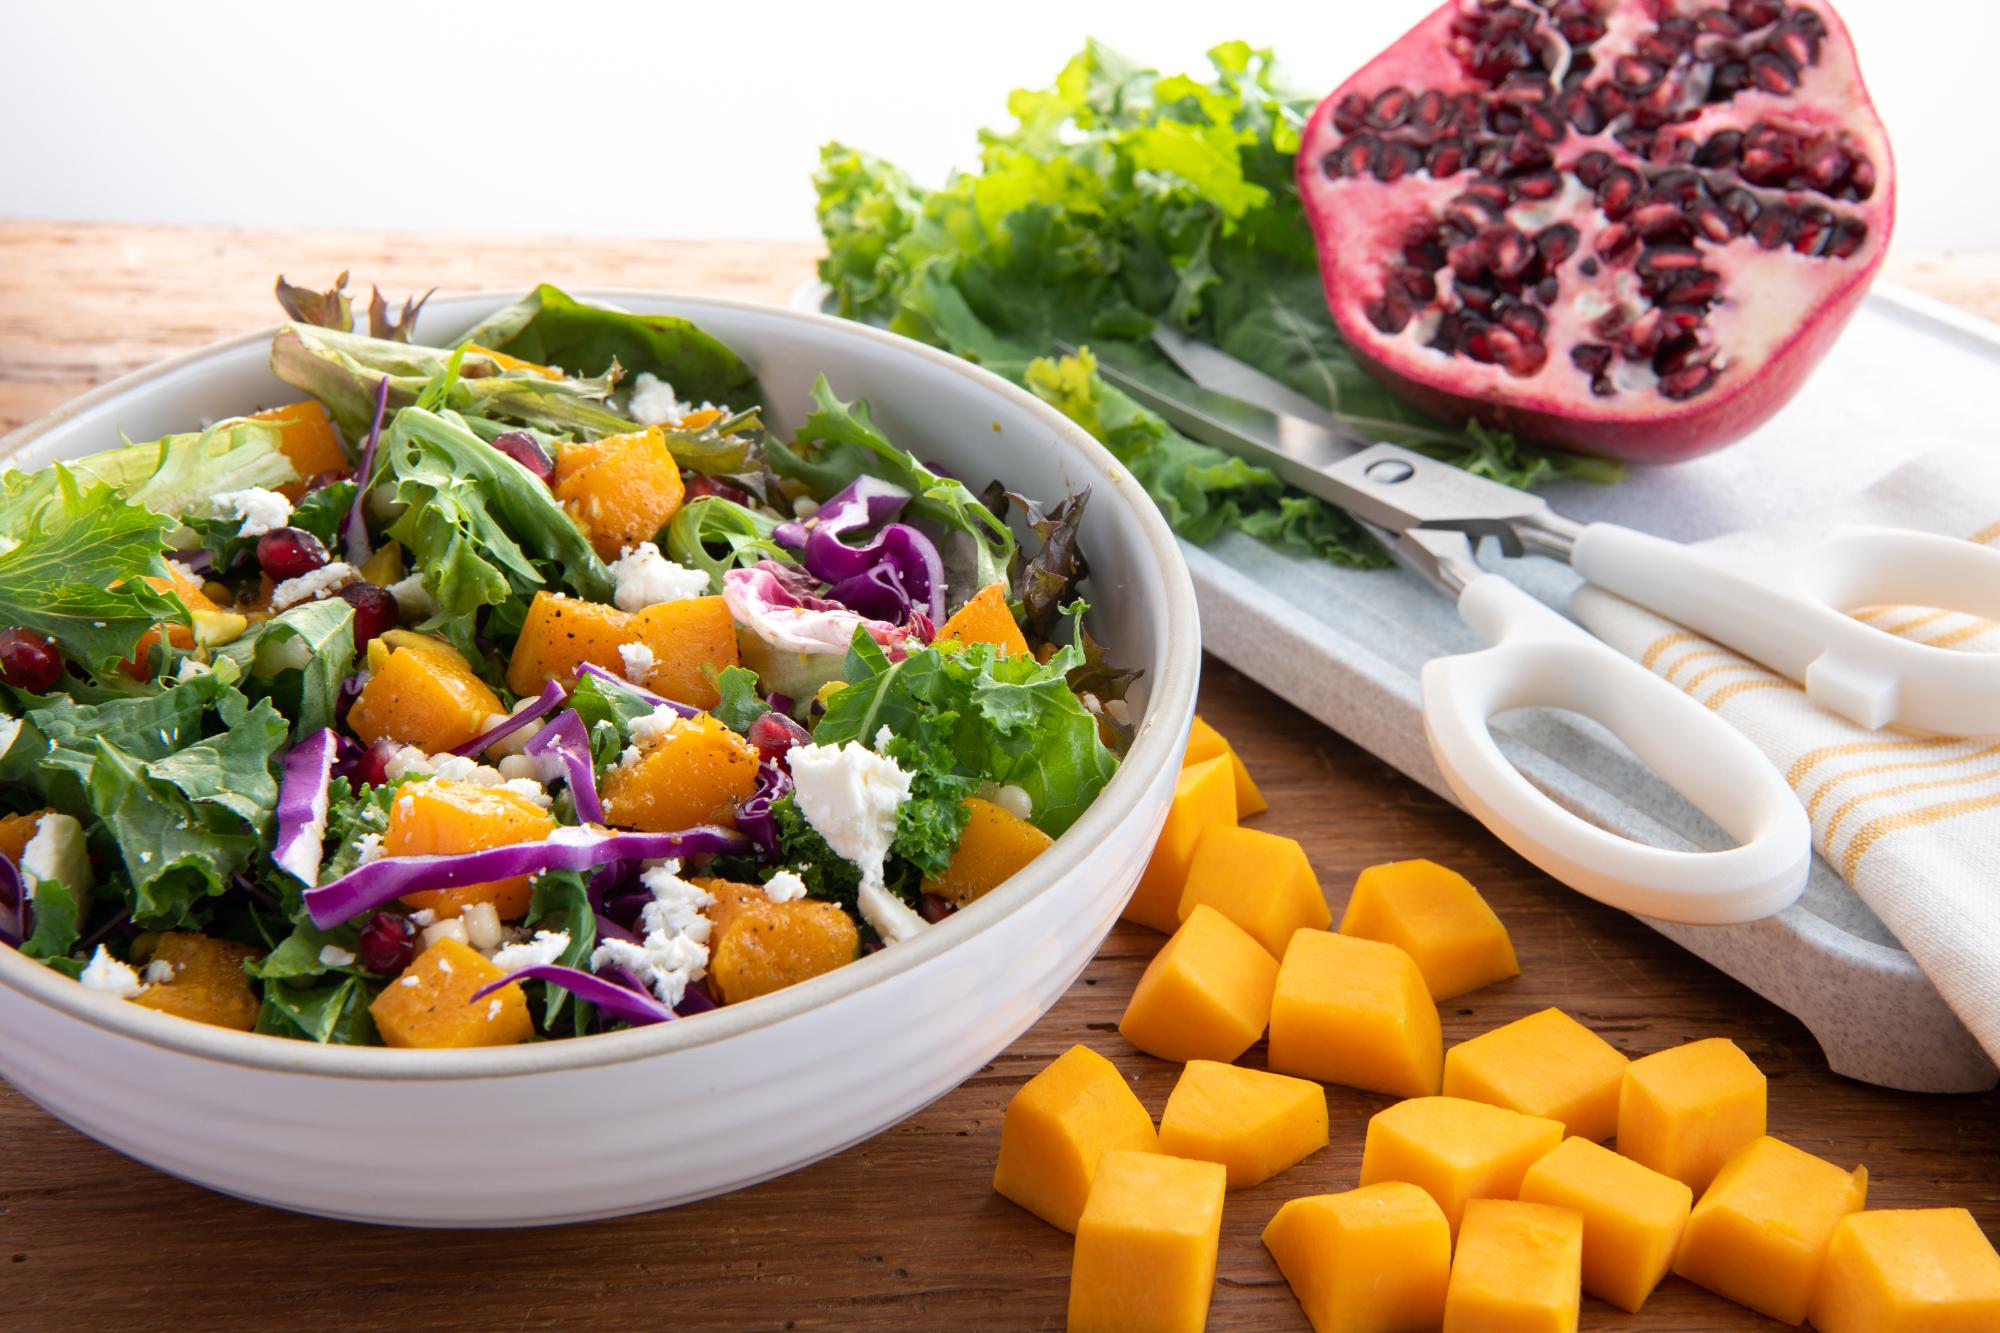 Kale, Butternut Squash and Couscous Salad With Vinaigrette